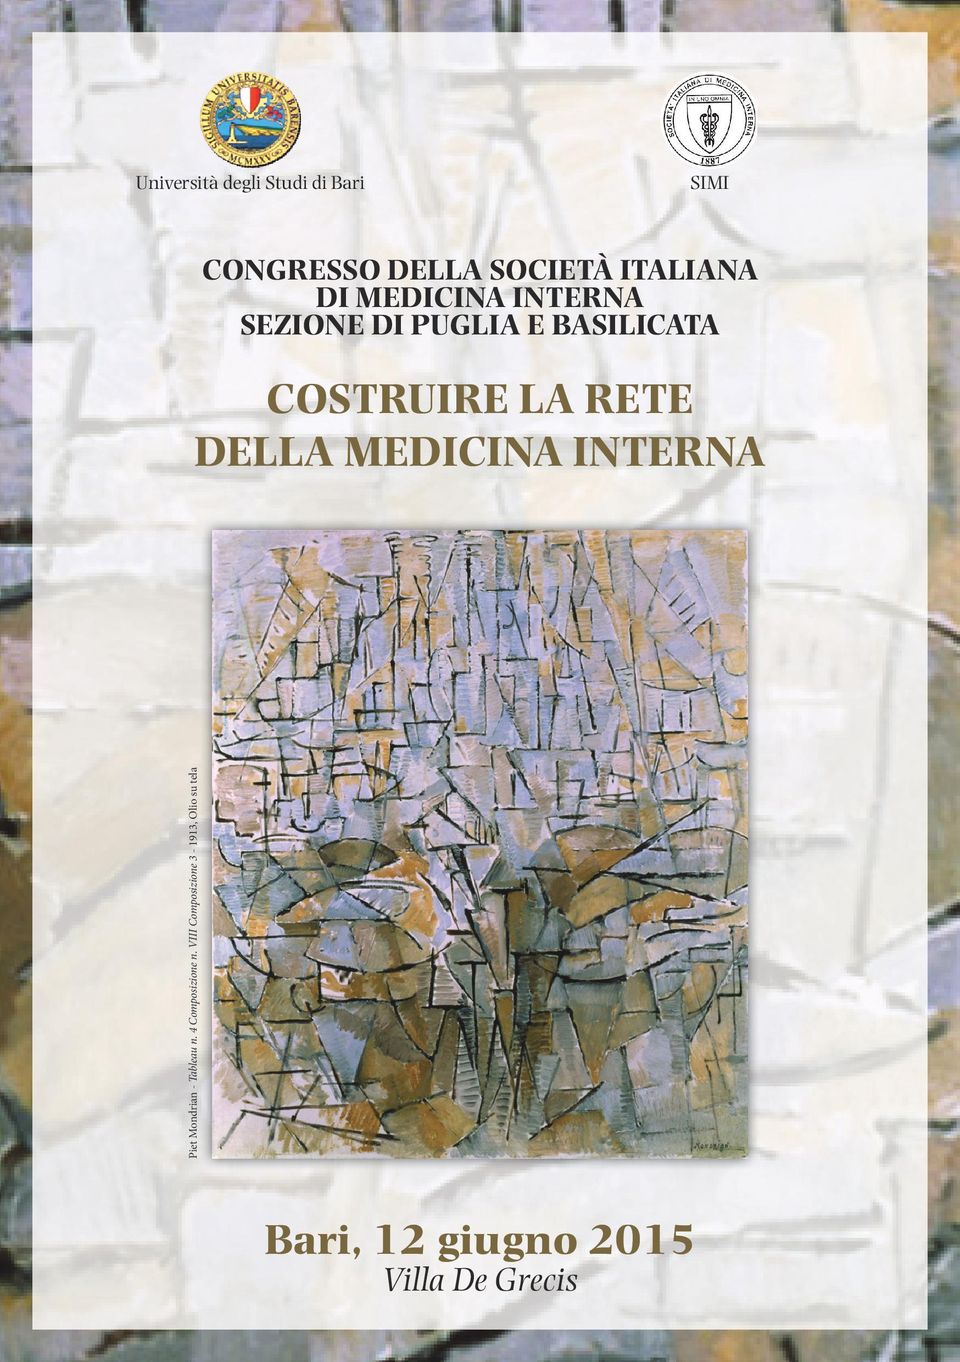 DELLA MEDICINA INTERNA Piet Mondrian - Tableau n. 4 Composizione n.